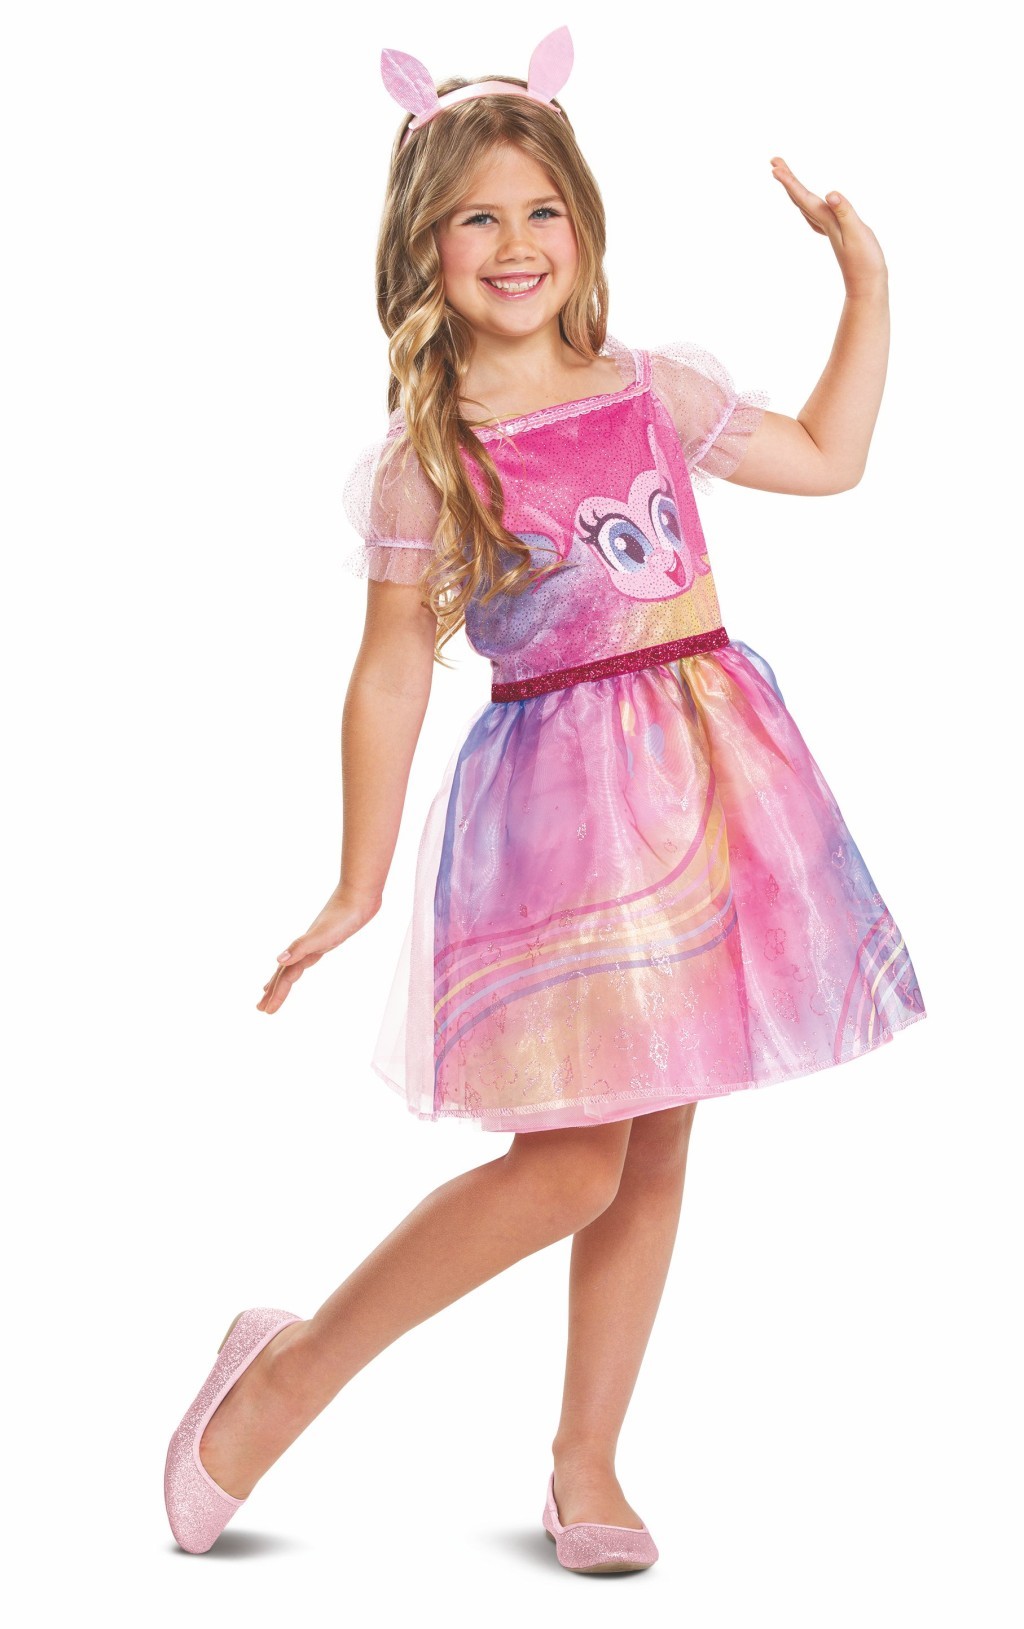 Epee Dětský kostým My Little Pony - Pinkie Pie Velikost - děti: M